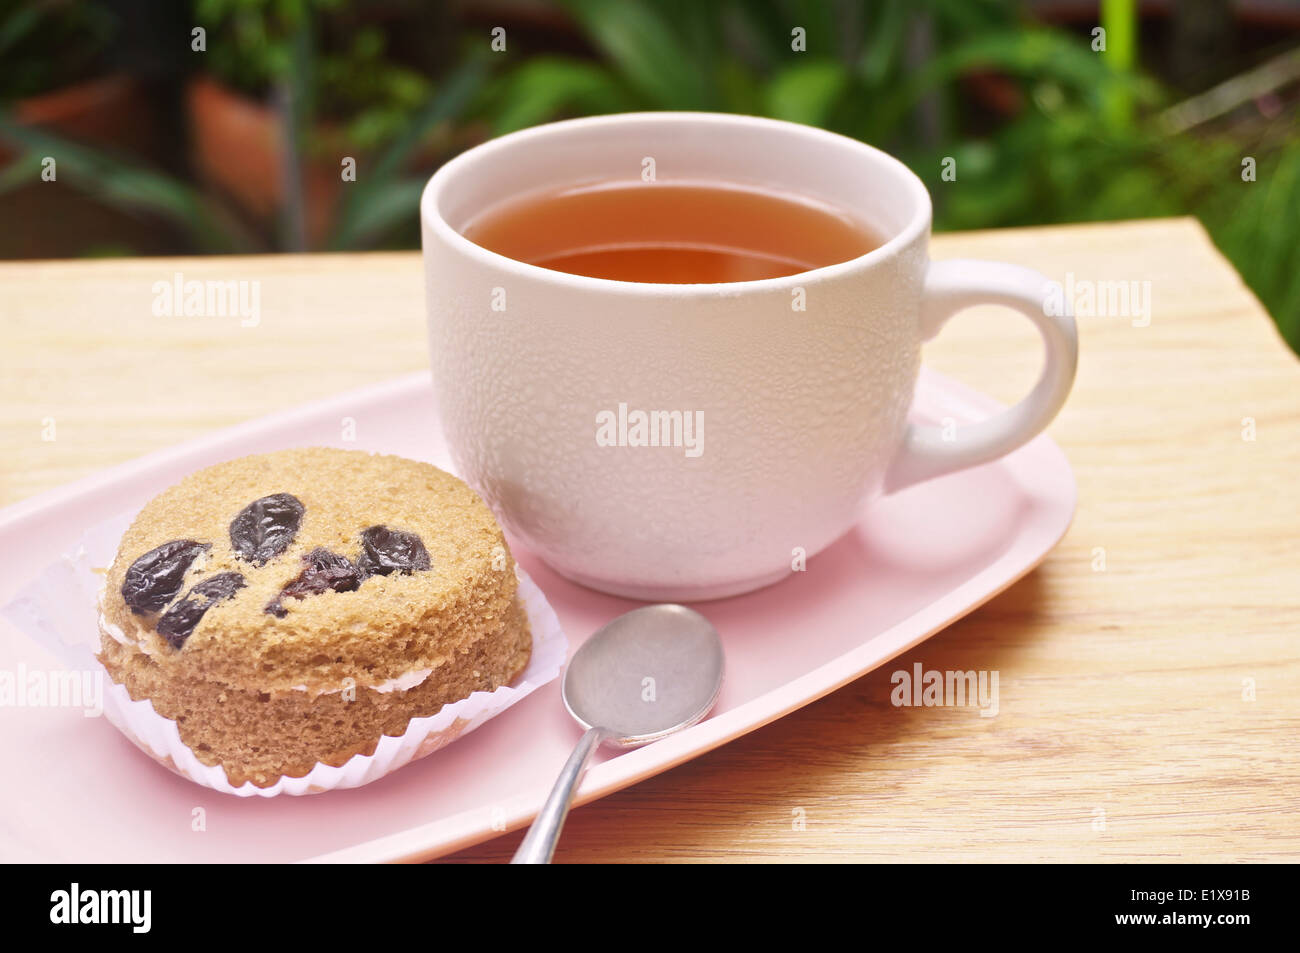 Il tè in tazza bianca e torta al lato con cucchiaio messo sul vassoio rosa in giardino. Foto Stock